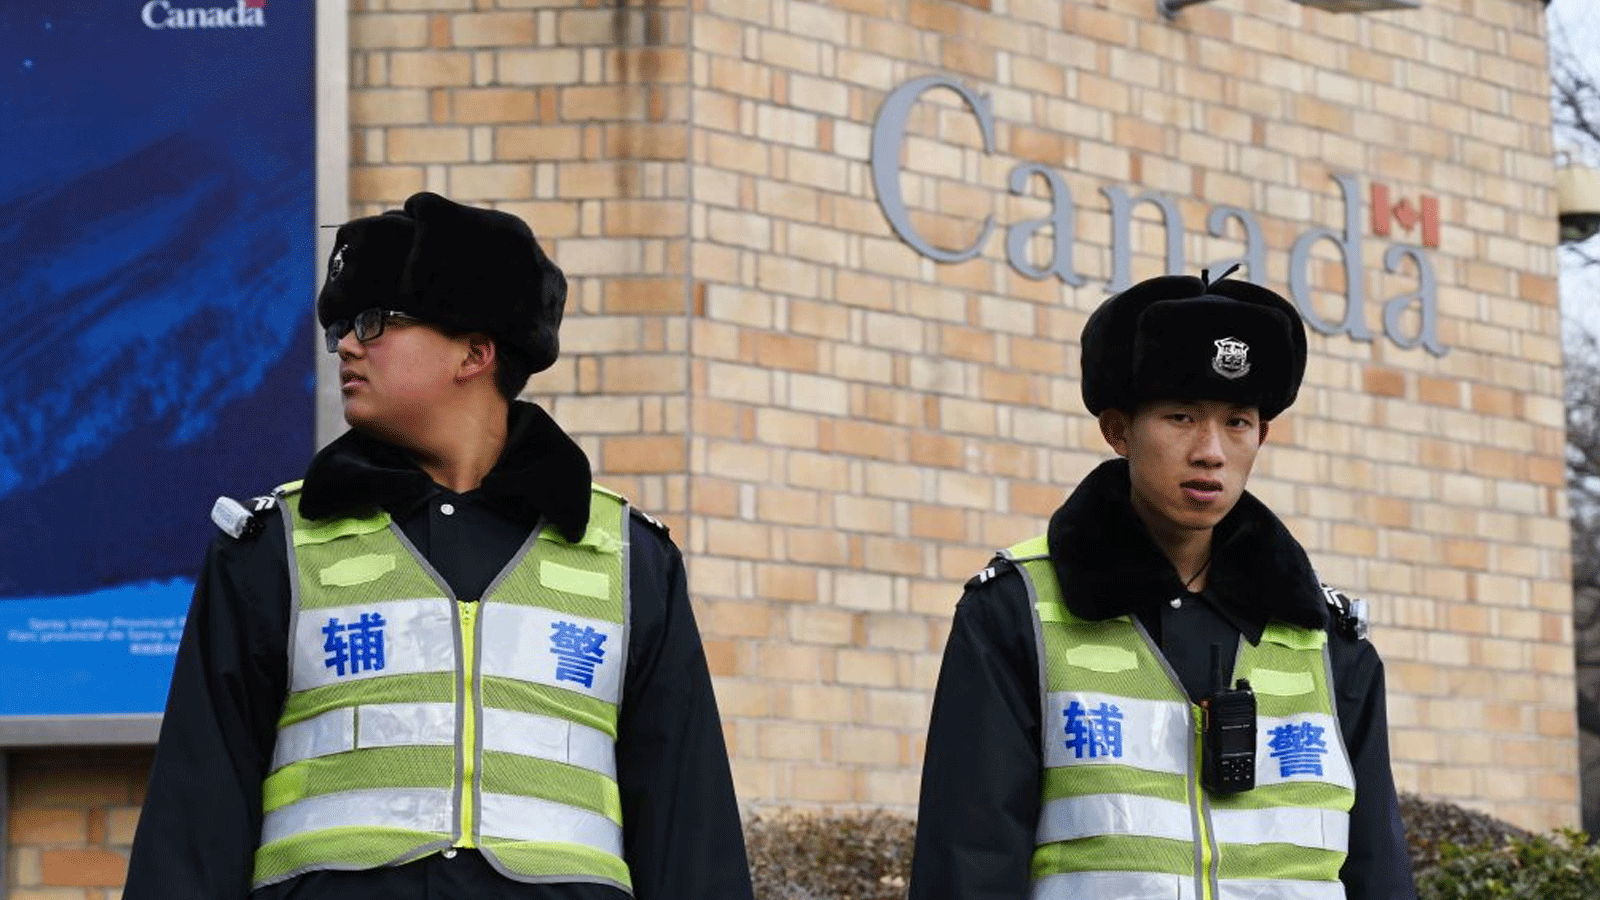 ضباط شرطة يقفون أمام السفارة الكندية في بكين. 27 كانون الثاني\يناير 2019